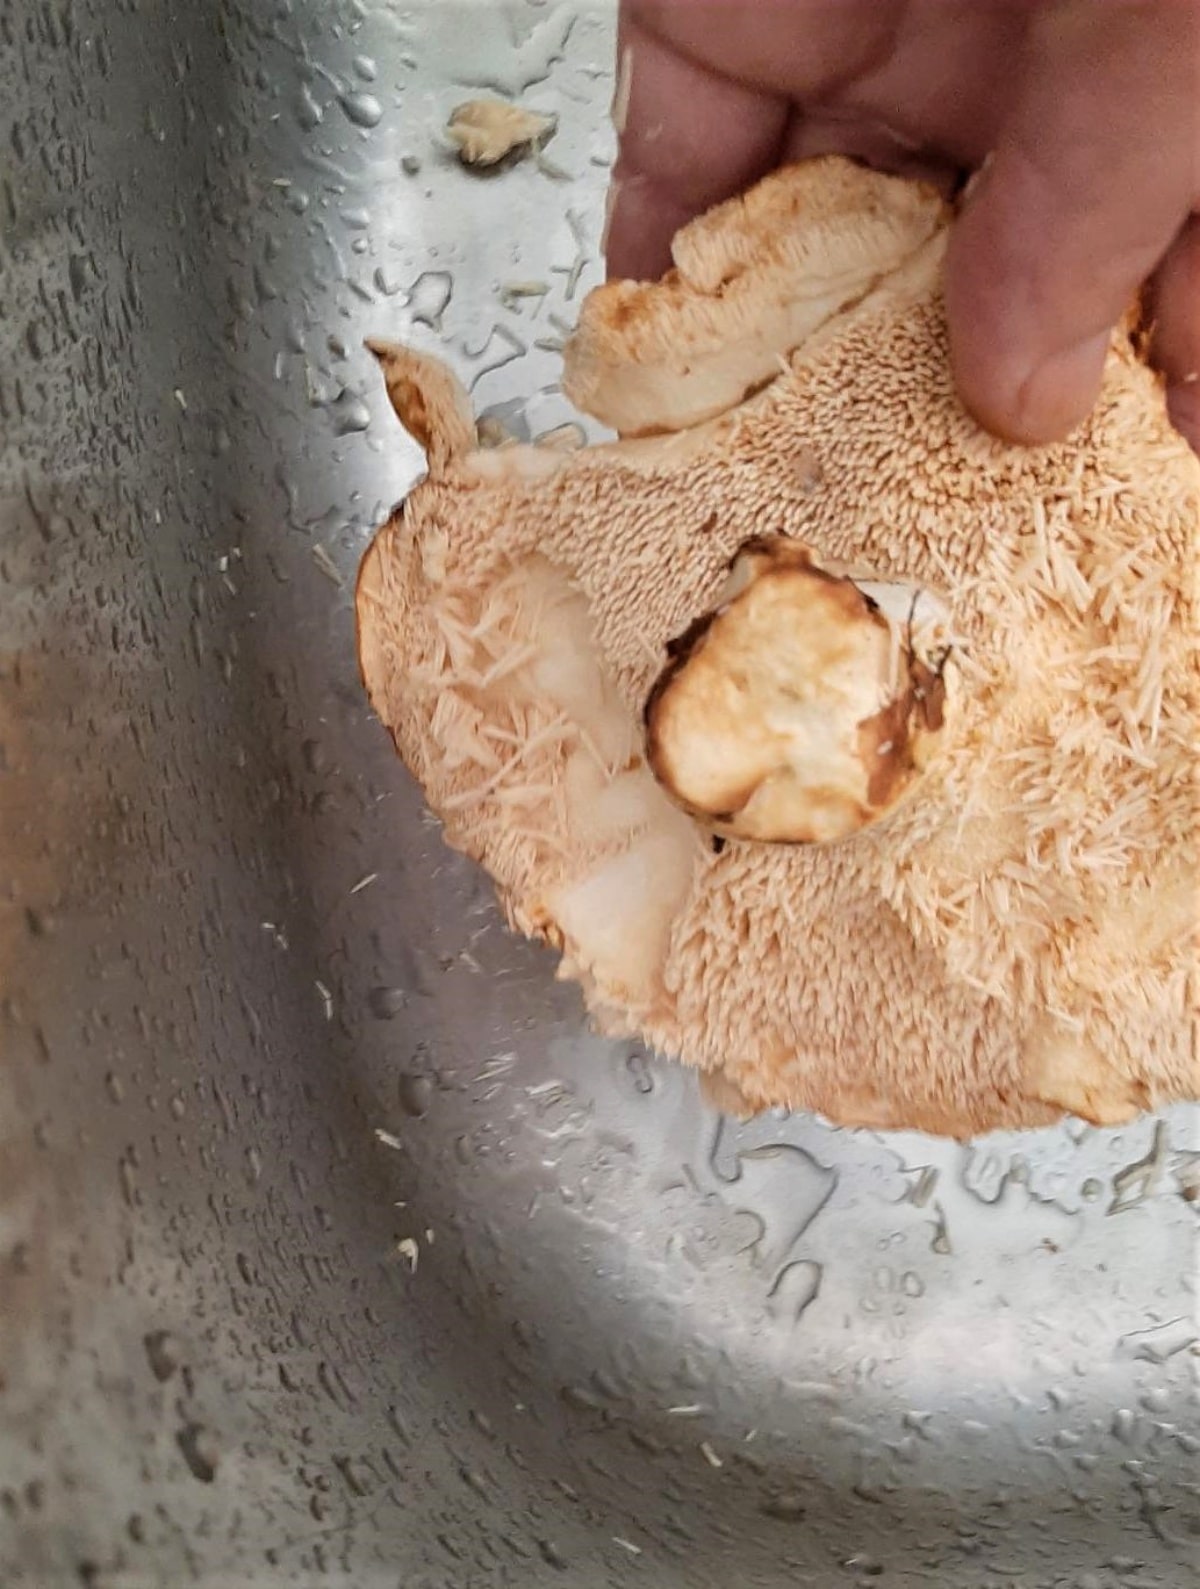 Hedgehog mushroom cleaned in sink under water